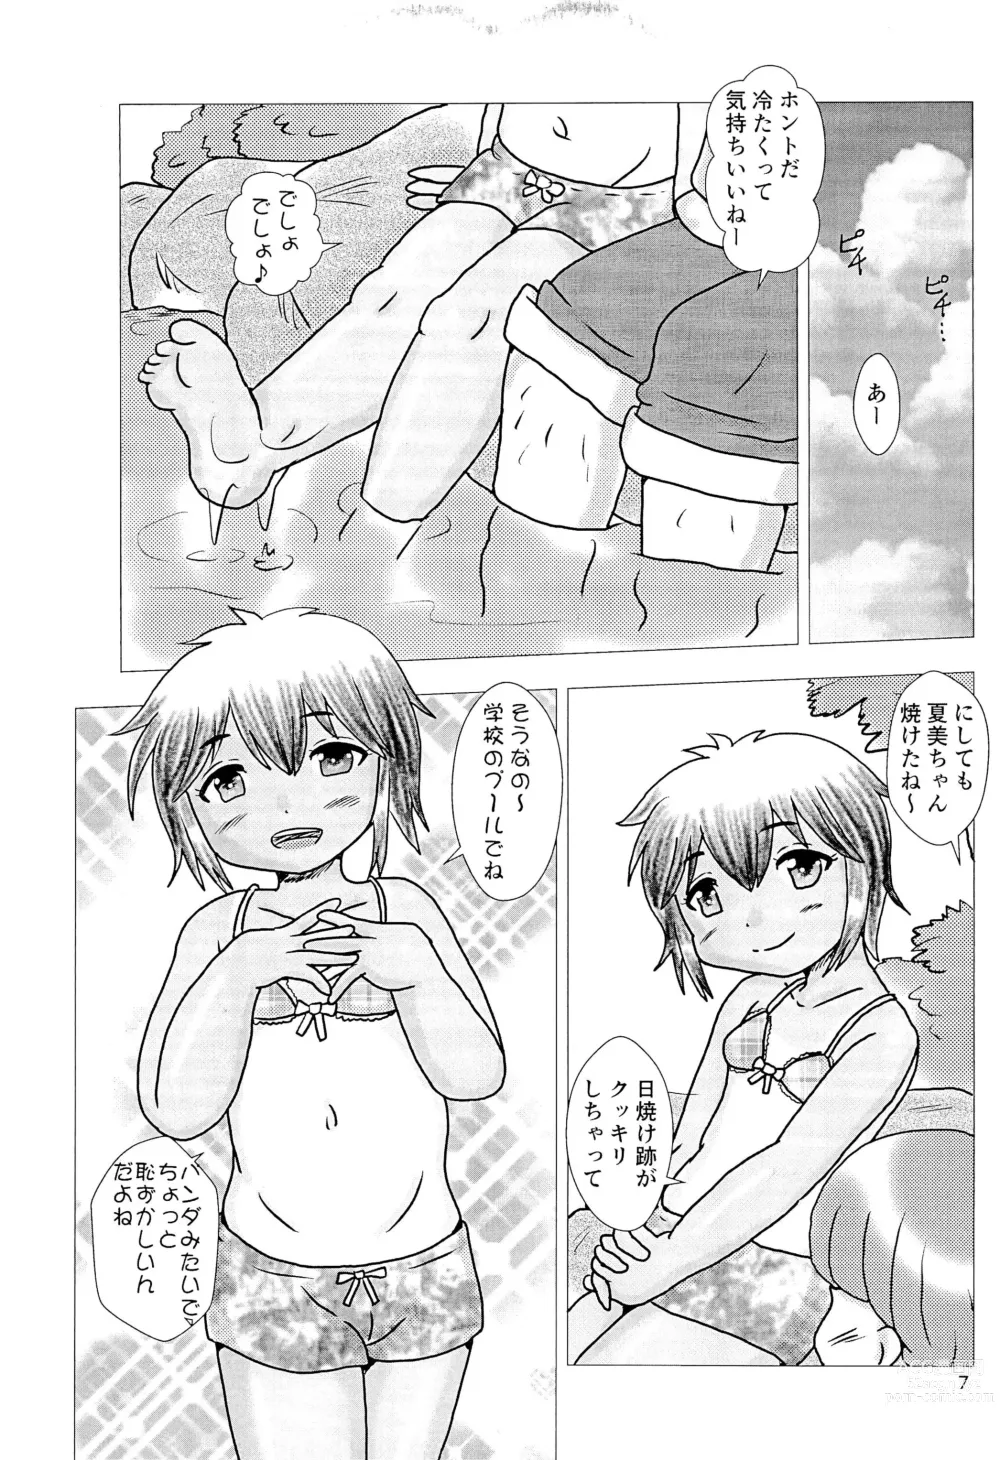 Page 7 of doujinshi Ougonmachi Summer Girl